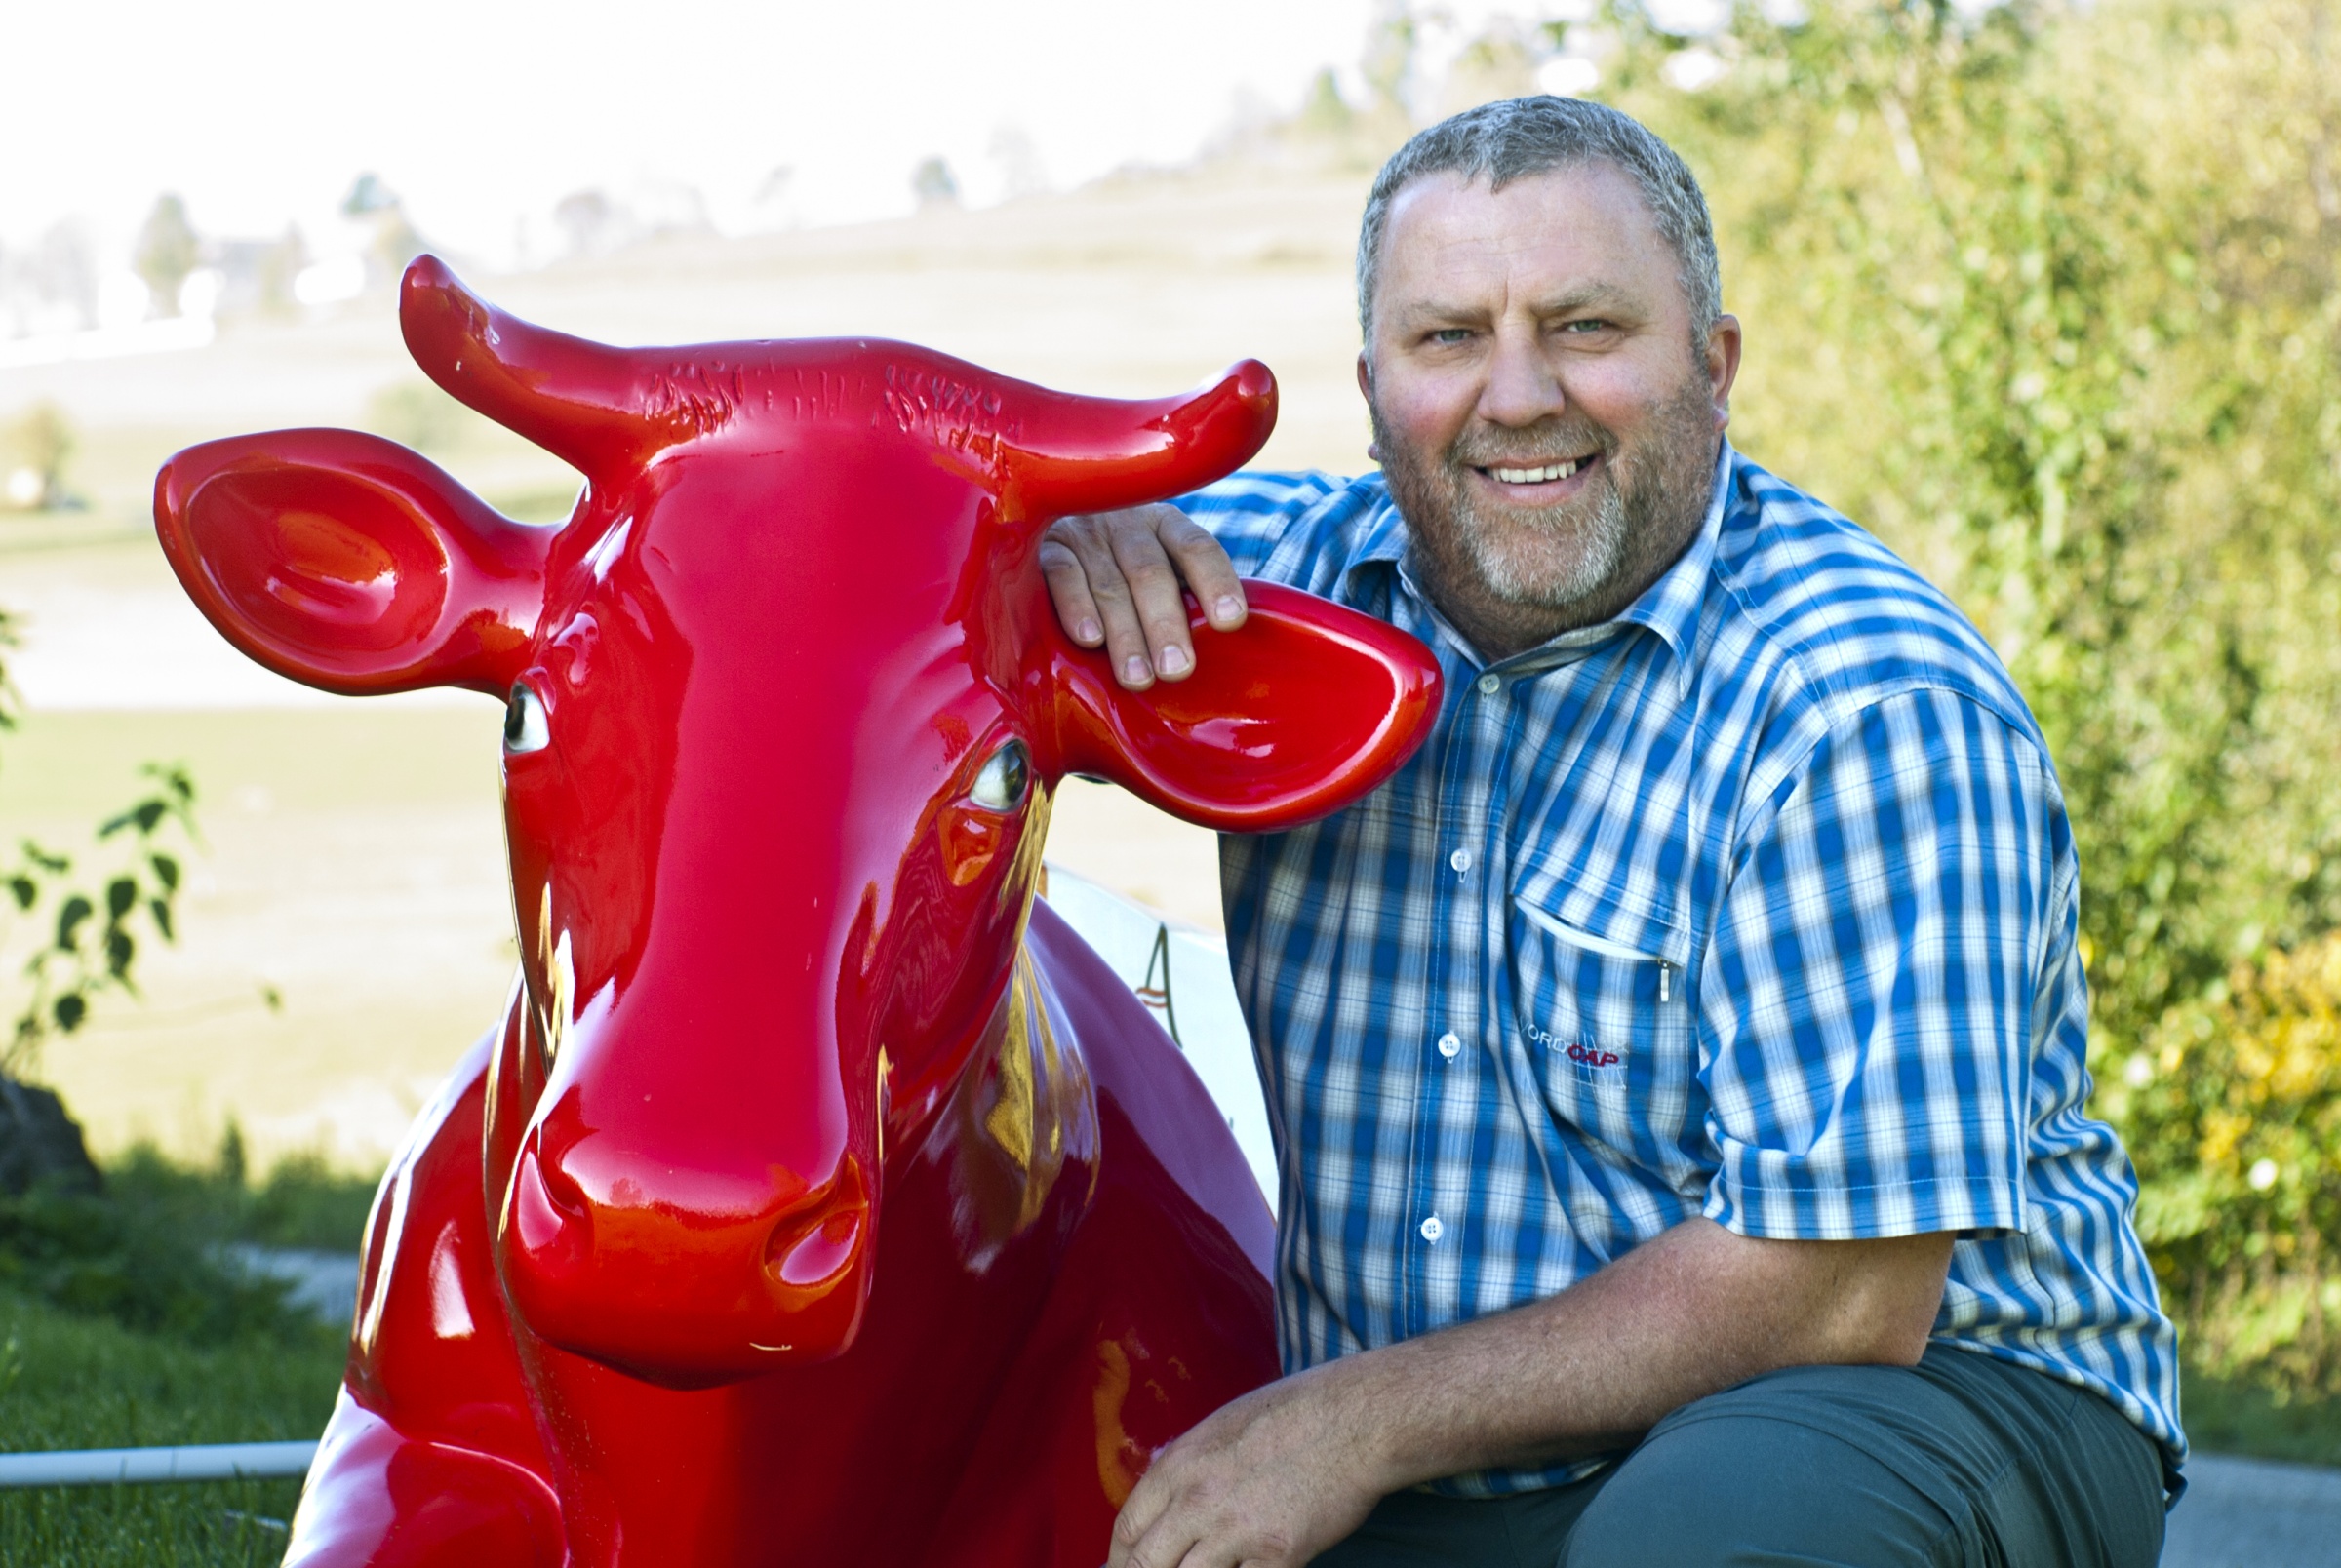 Landwirt Ewald Grünzweil posiert neben eine "A Faire Milch" Kuh.